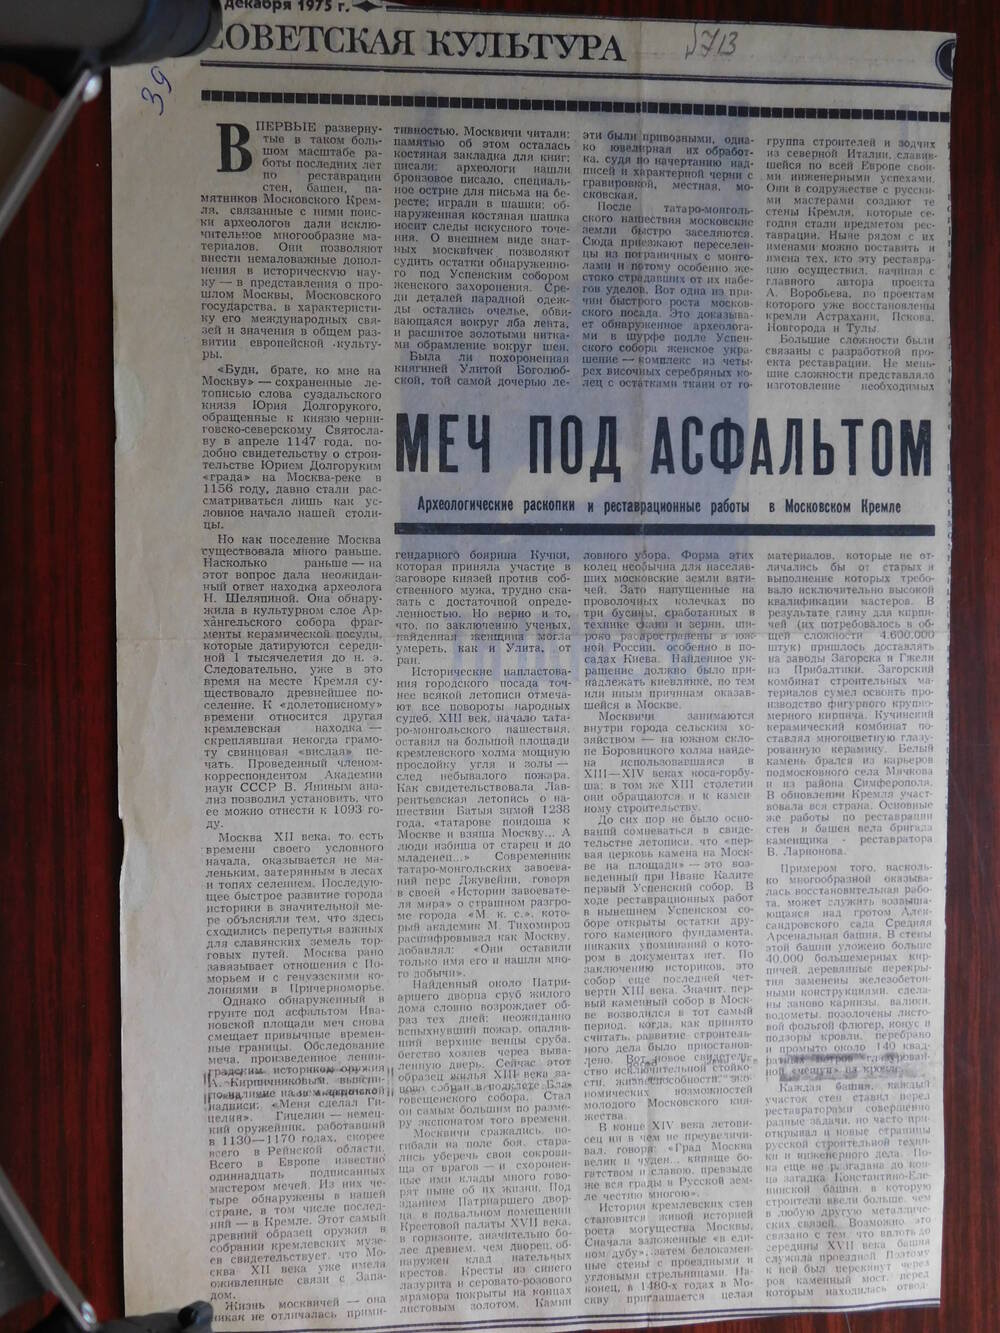 Фрагмент газеты Советская культура от 19.12.1975 г. Ст. Мы под асфальтом. Москва.